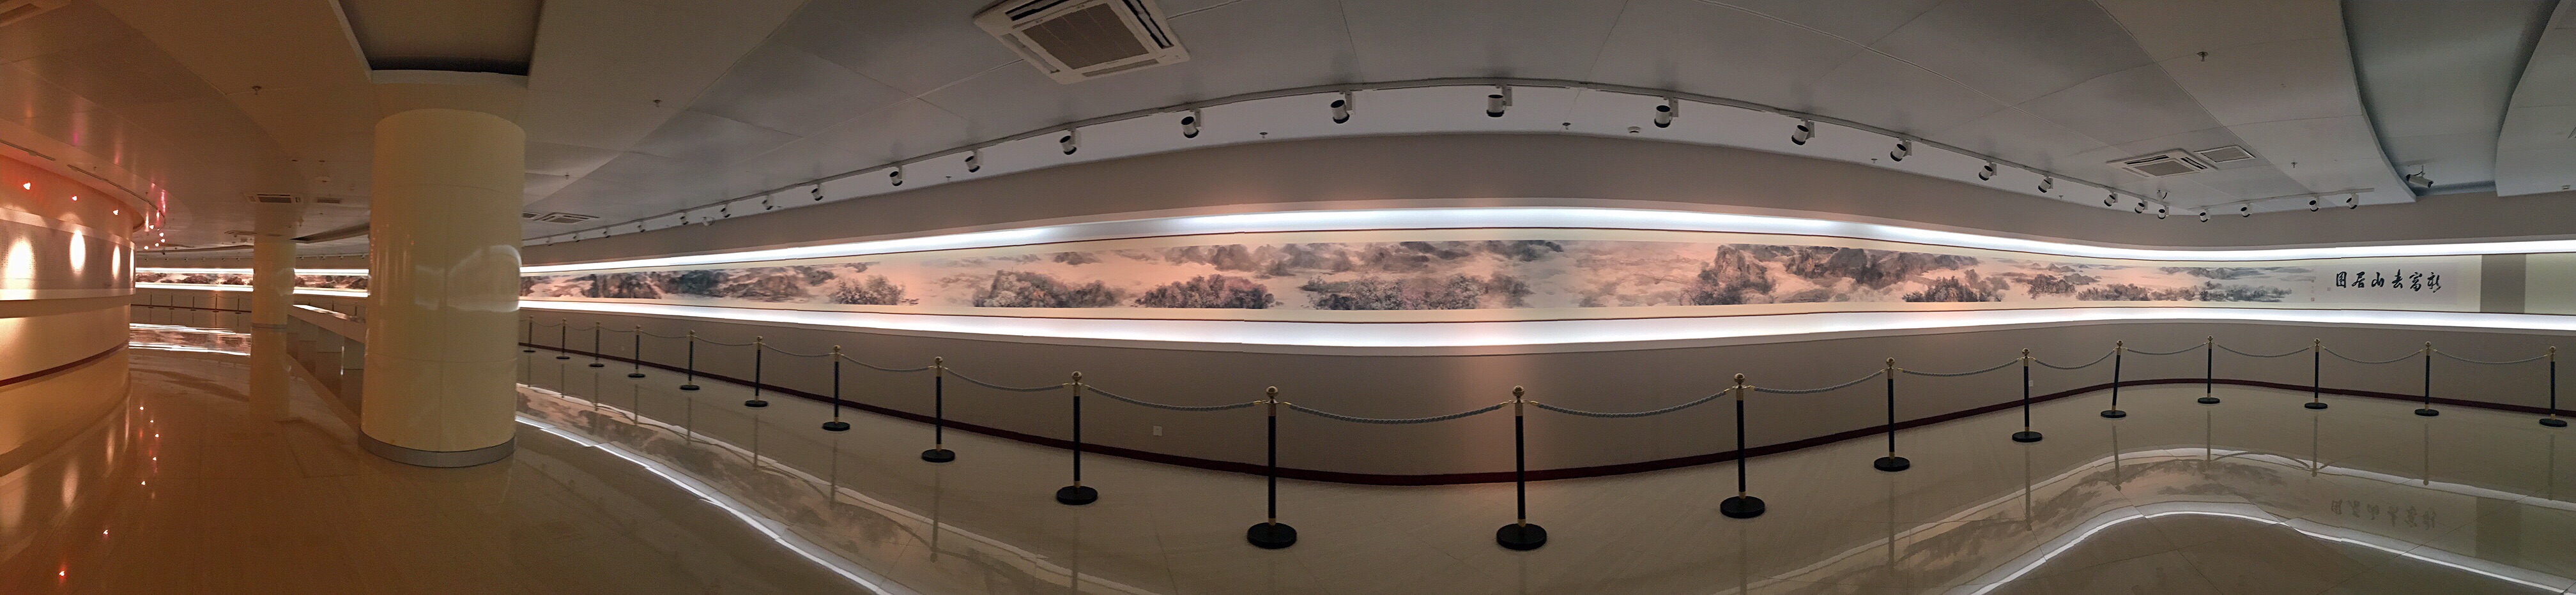 宋雨桂艺术博物馆